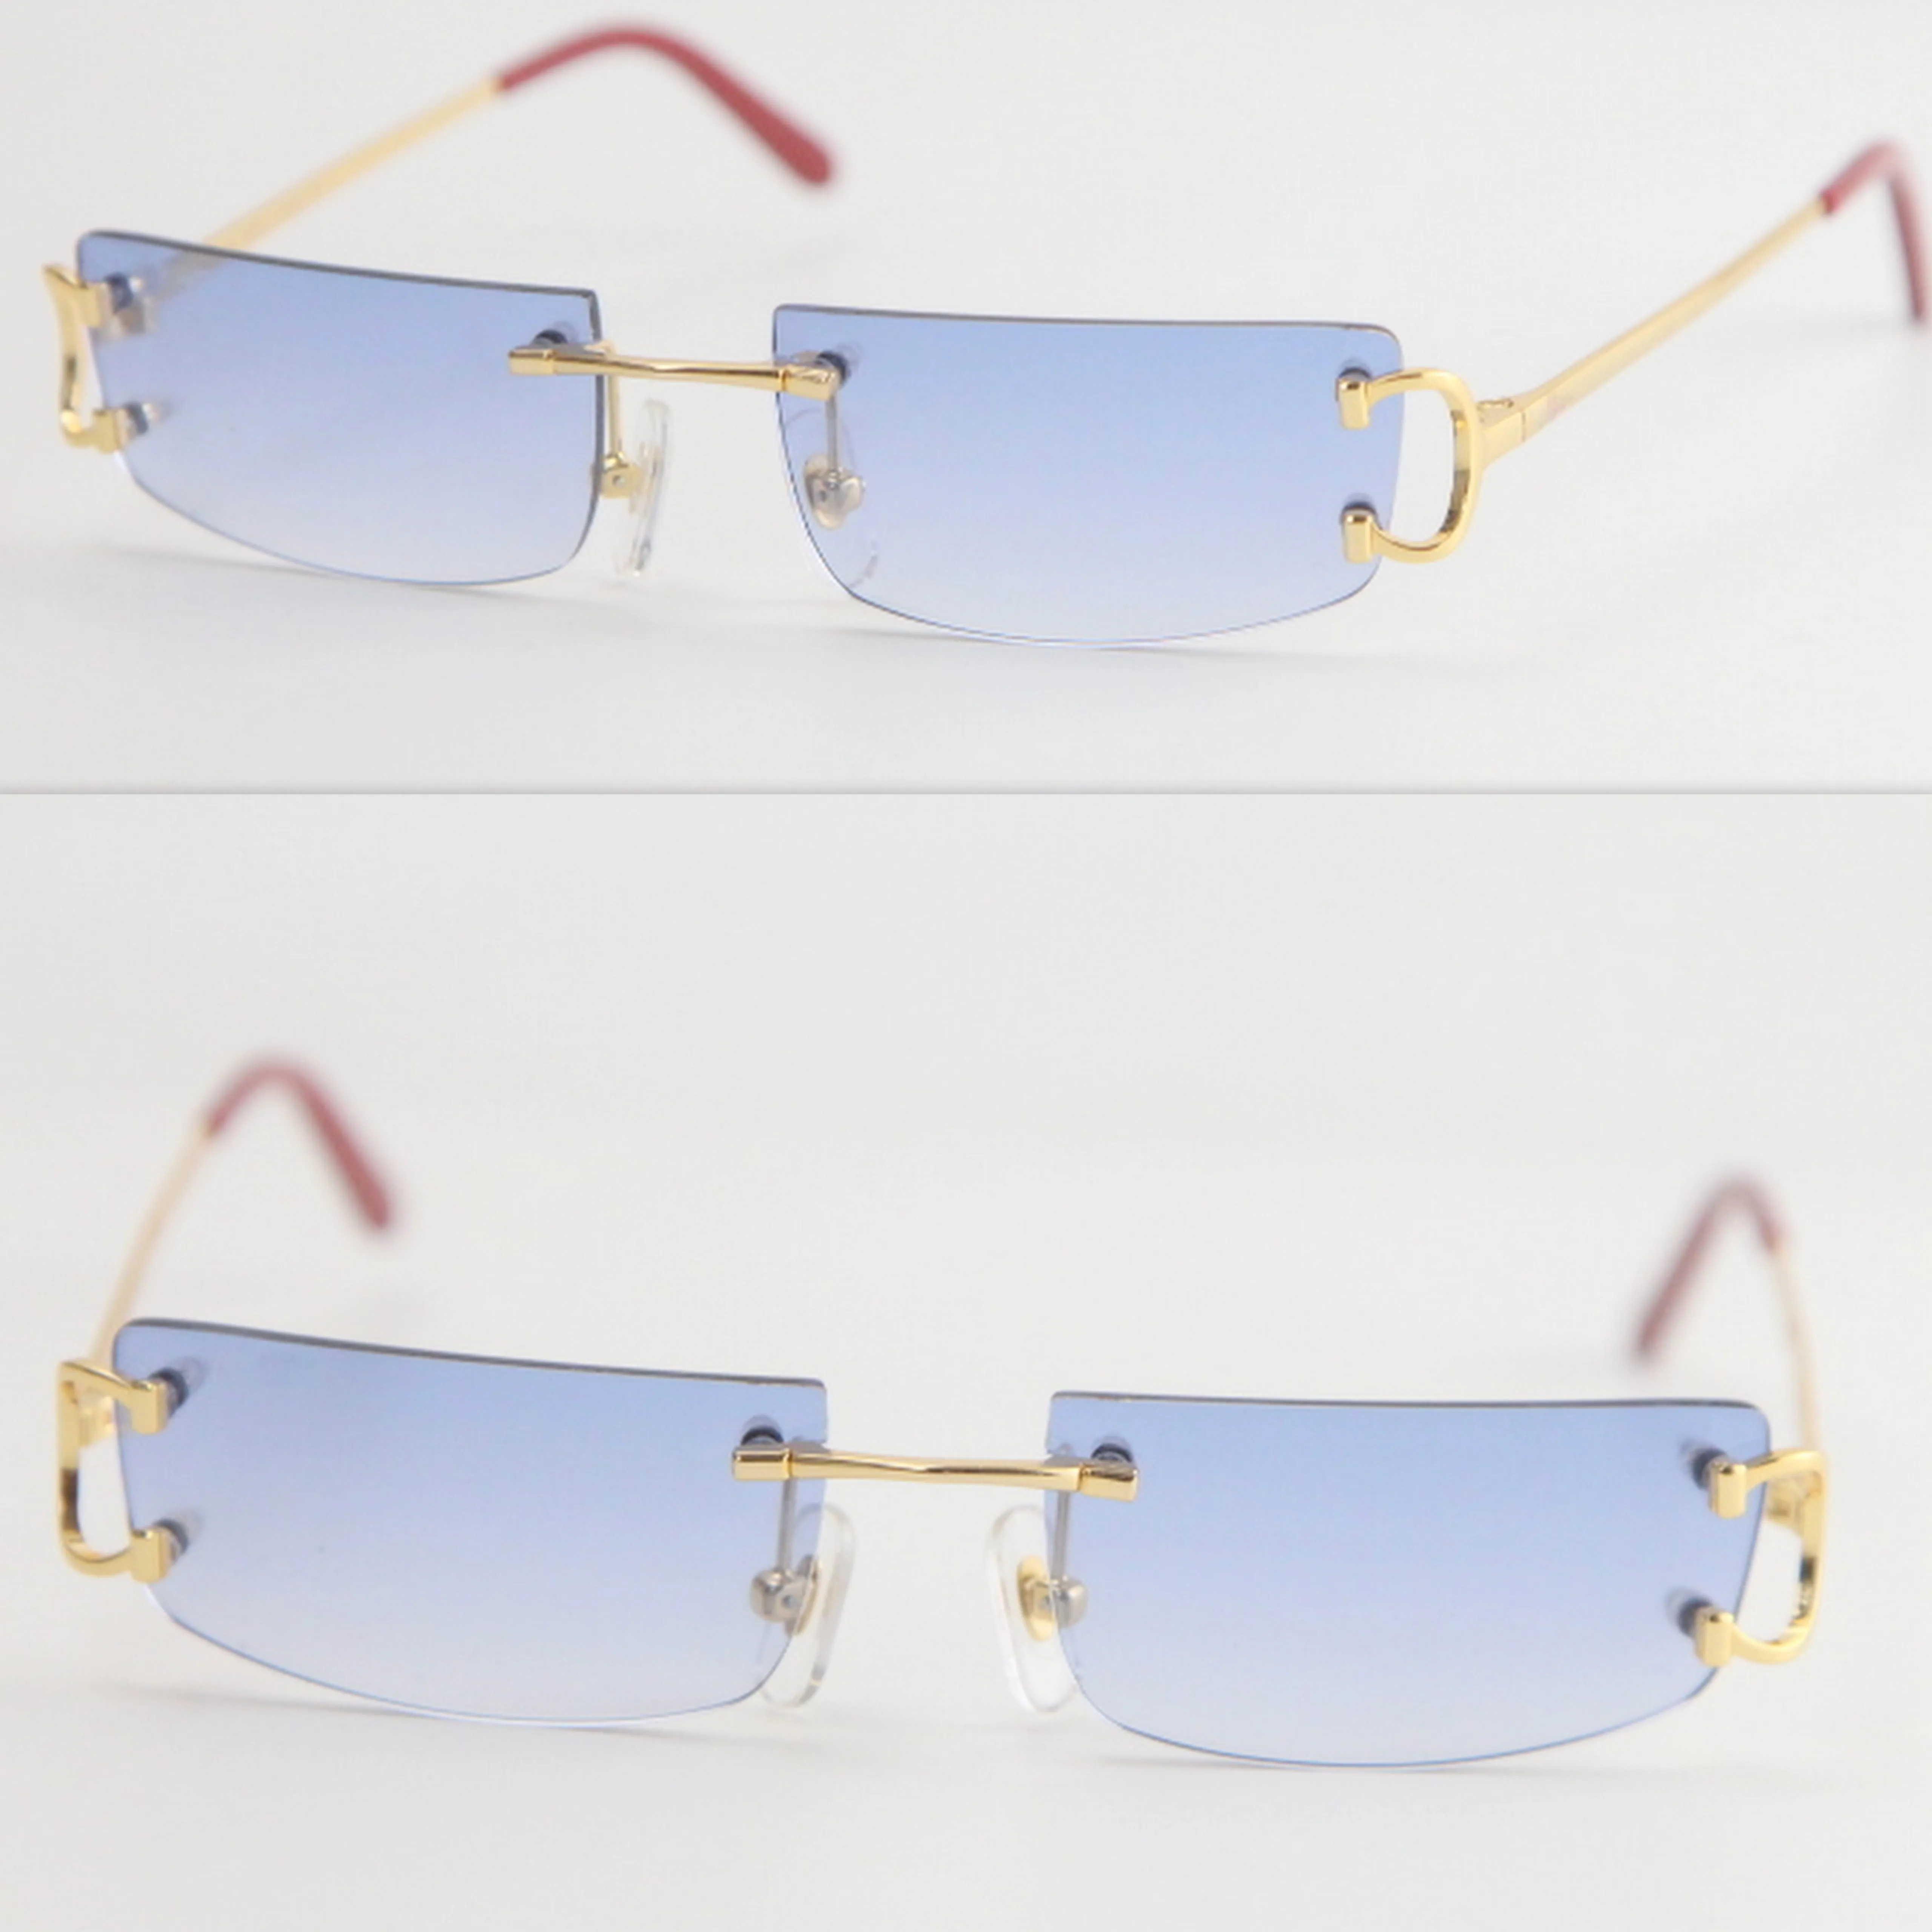 Металлические маленькие квадратные солнцезащитные очки без оправы для мужчин и женщин с украшением, очки унисекс для лета, путешествий на открытом воздухе, в золотой оправе, размер 52-18-140230S